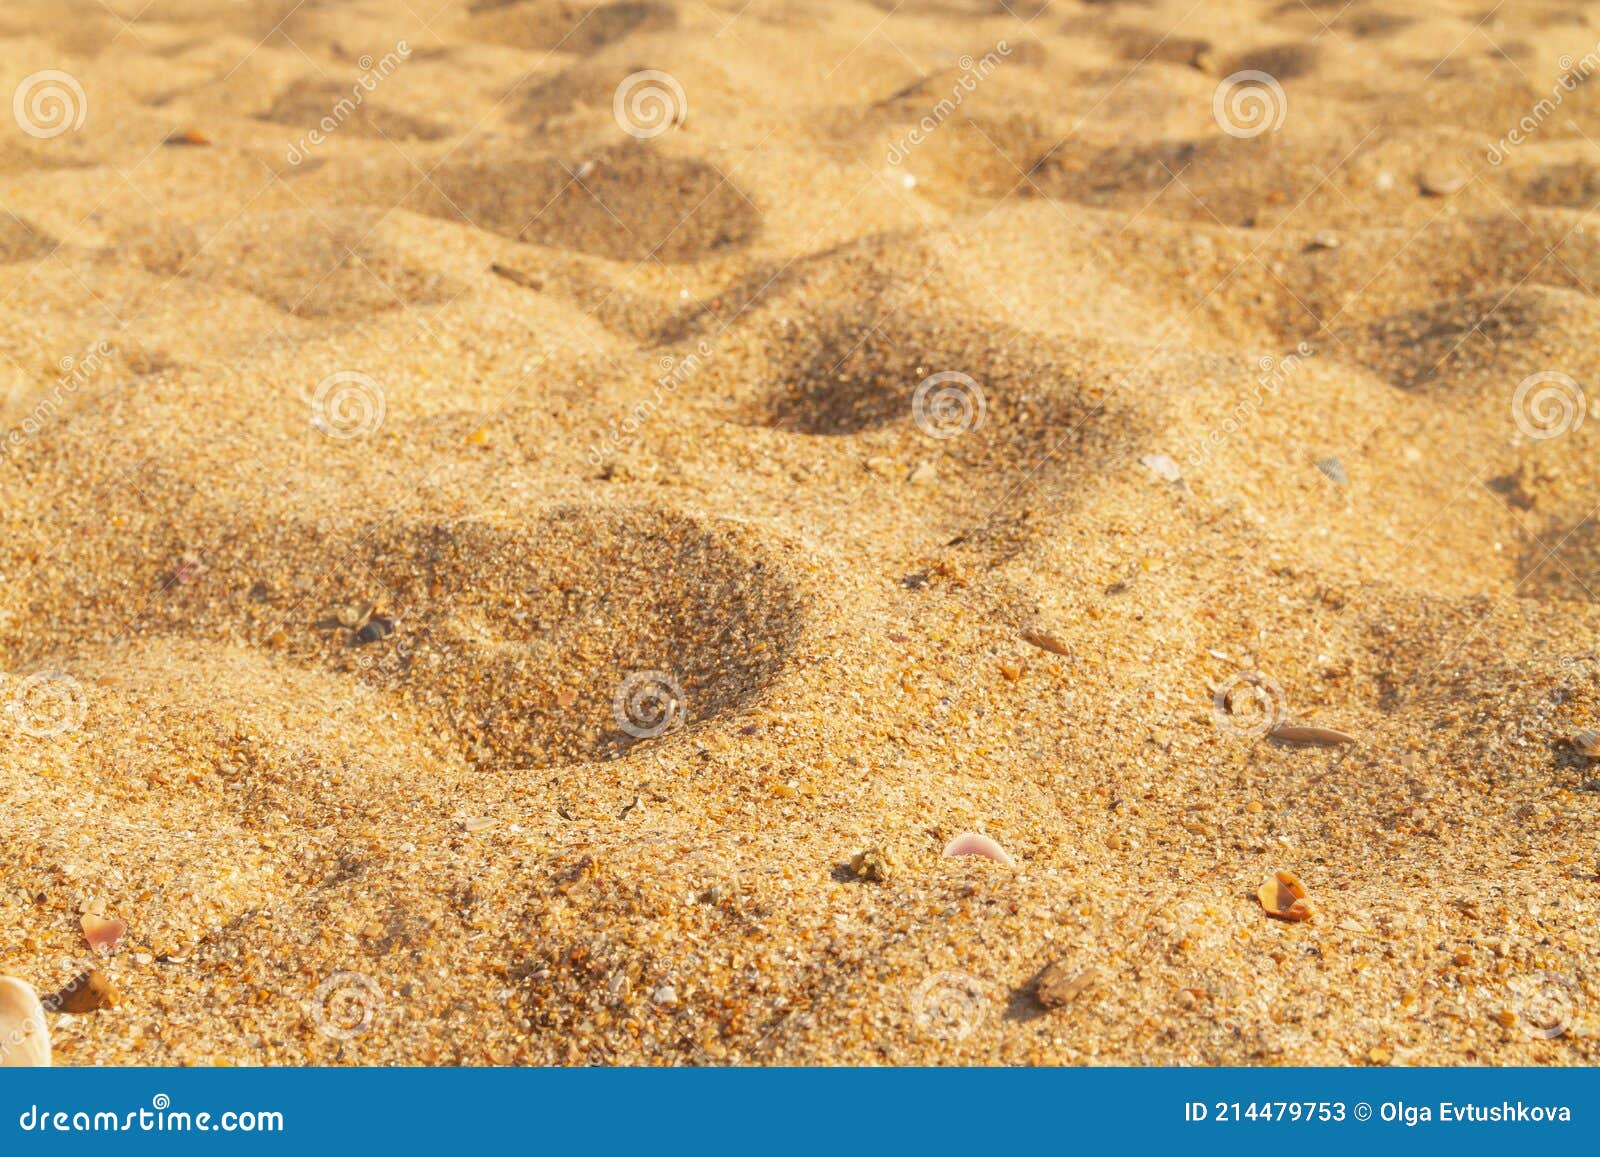 wond nicht De neiging hebben Geel Grof Zand Op Het Strand Bij Zee Stock Afbeelding - Image of ruimte,  buiten: 214479753